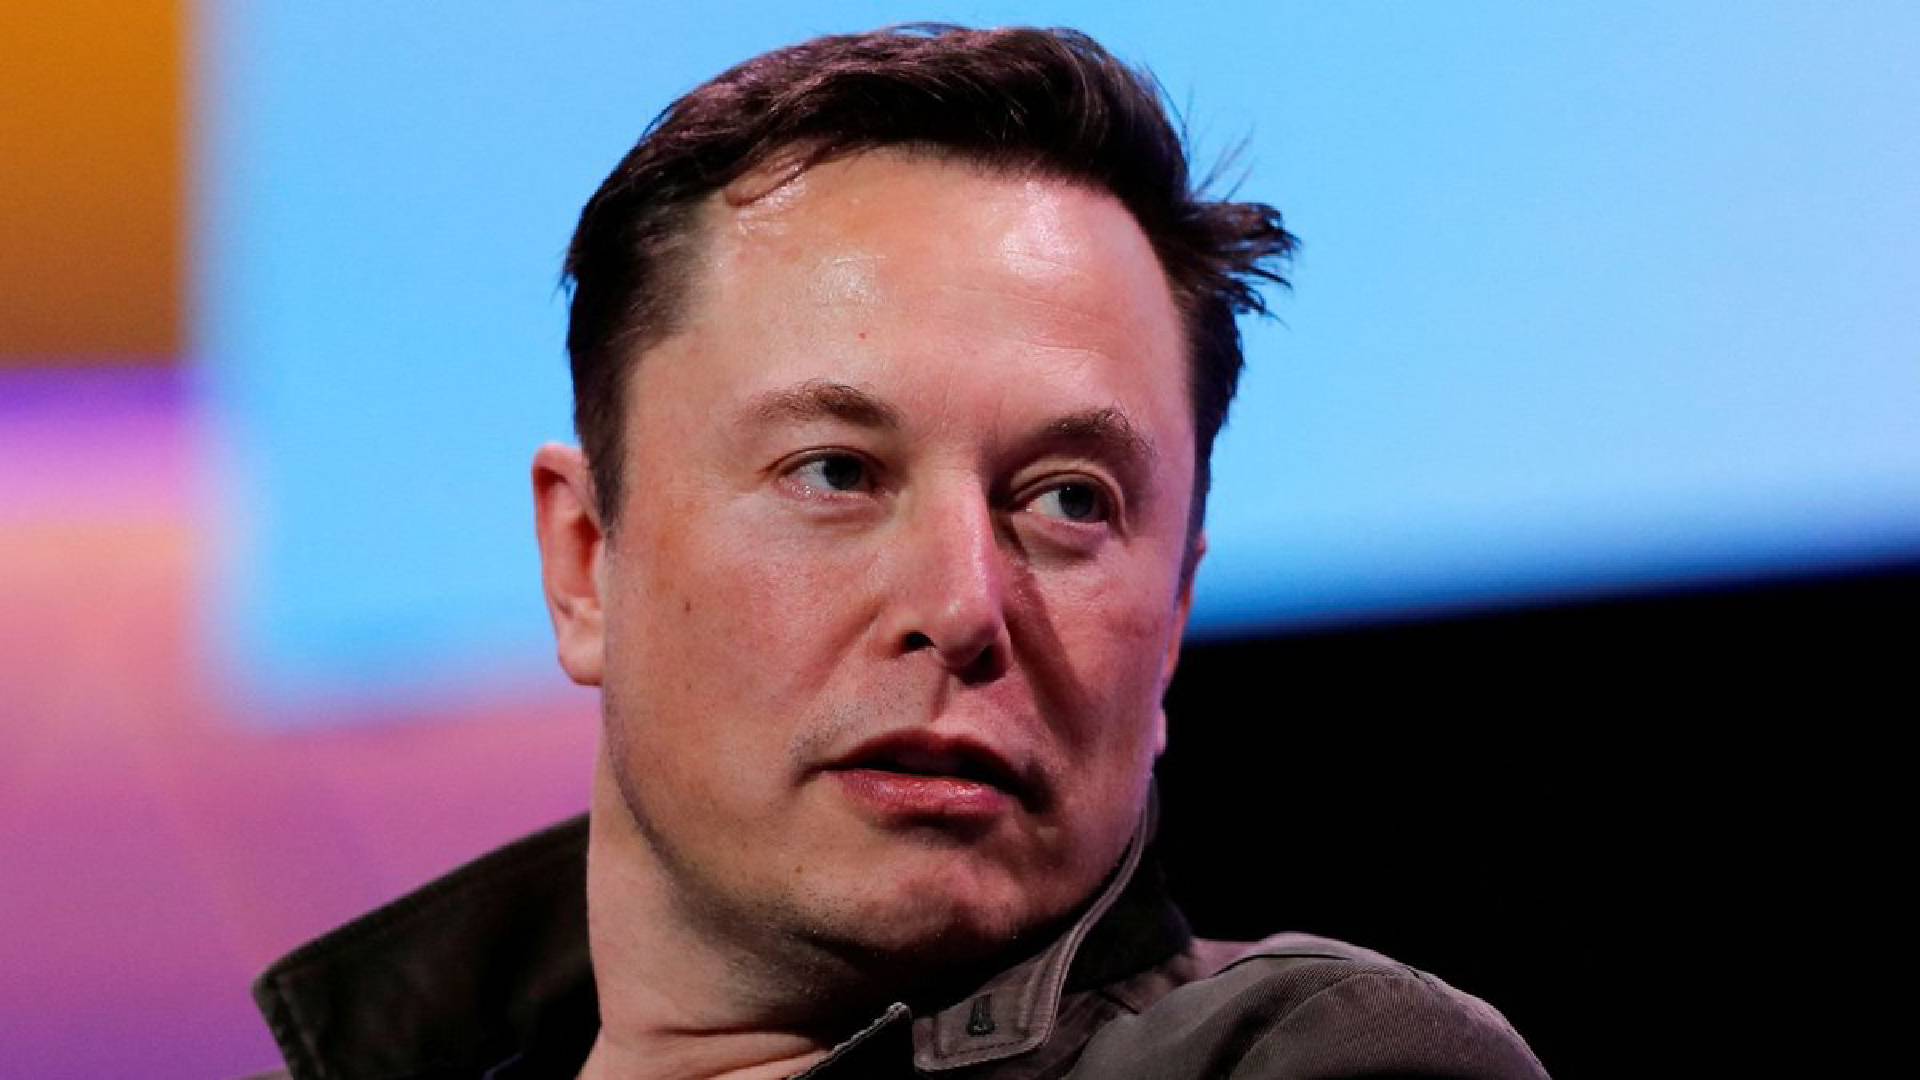 Elon Musk Football Talk Elon Musk Pasang Niat Beli Manchester United